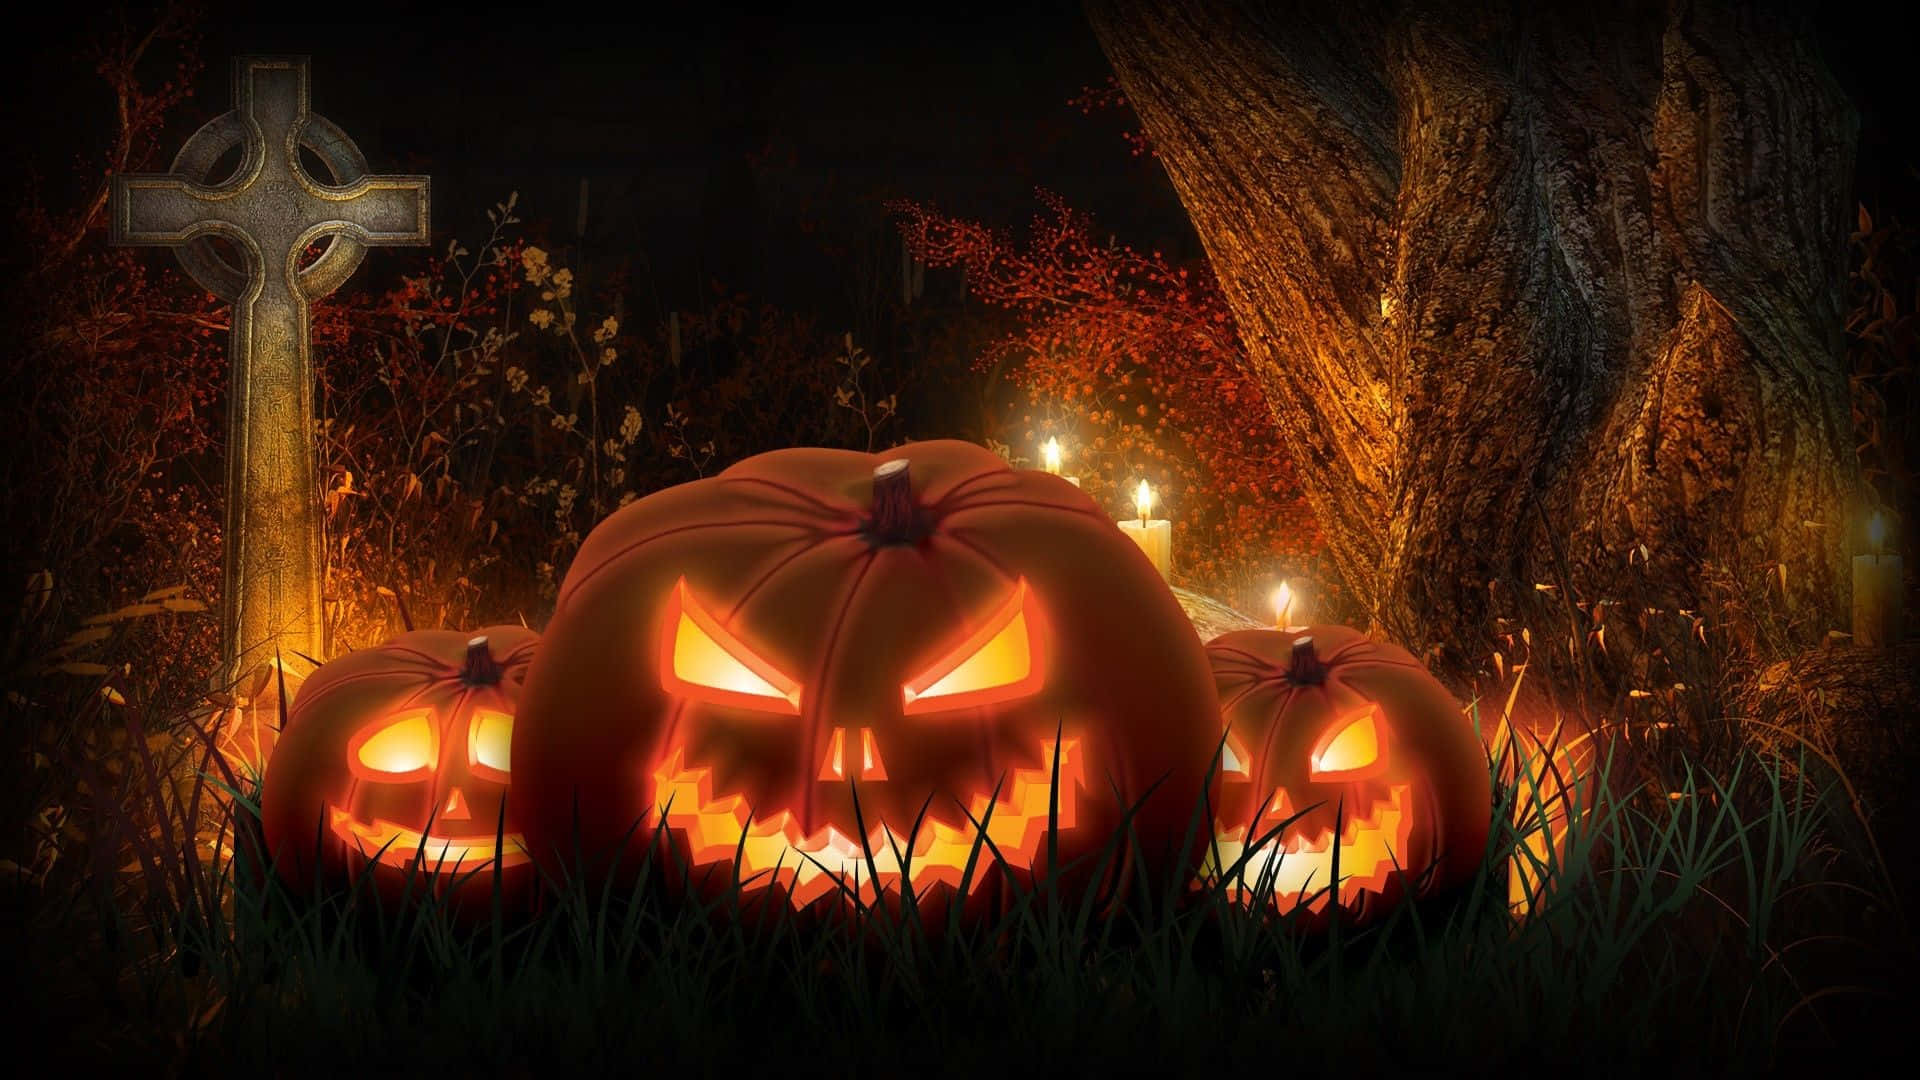 Mørk, æstetisk Halloween-scene